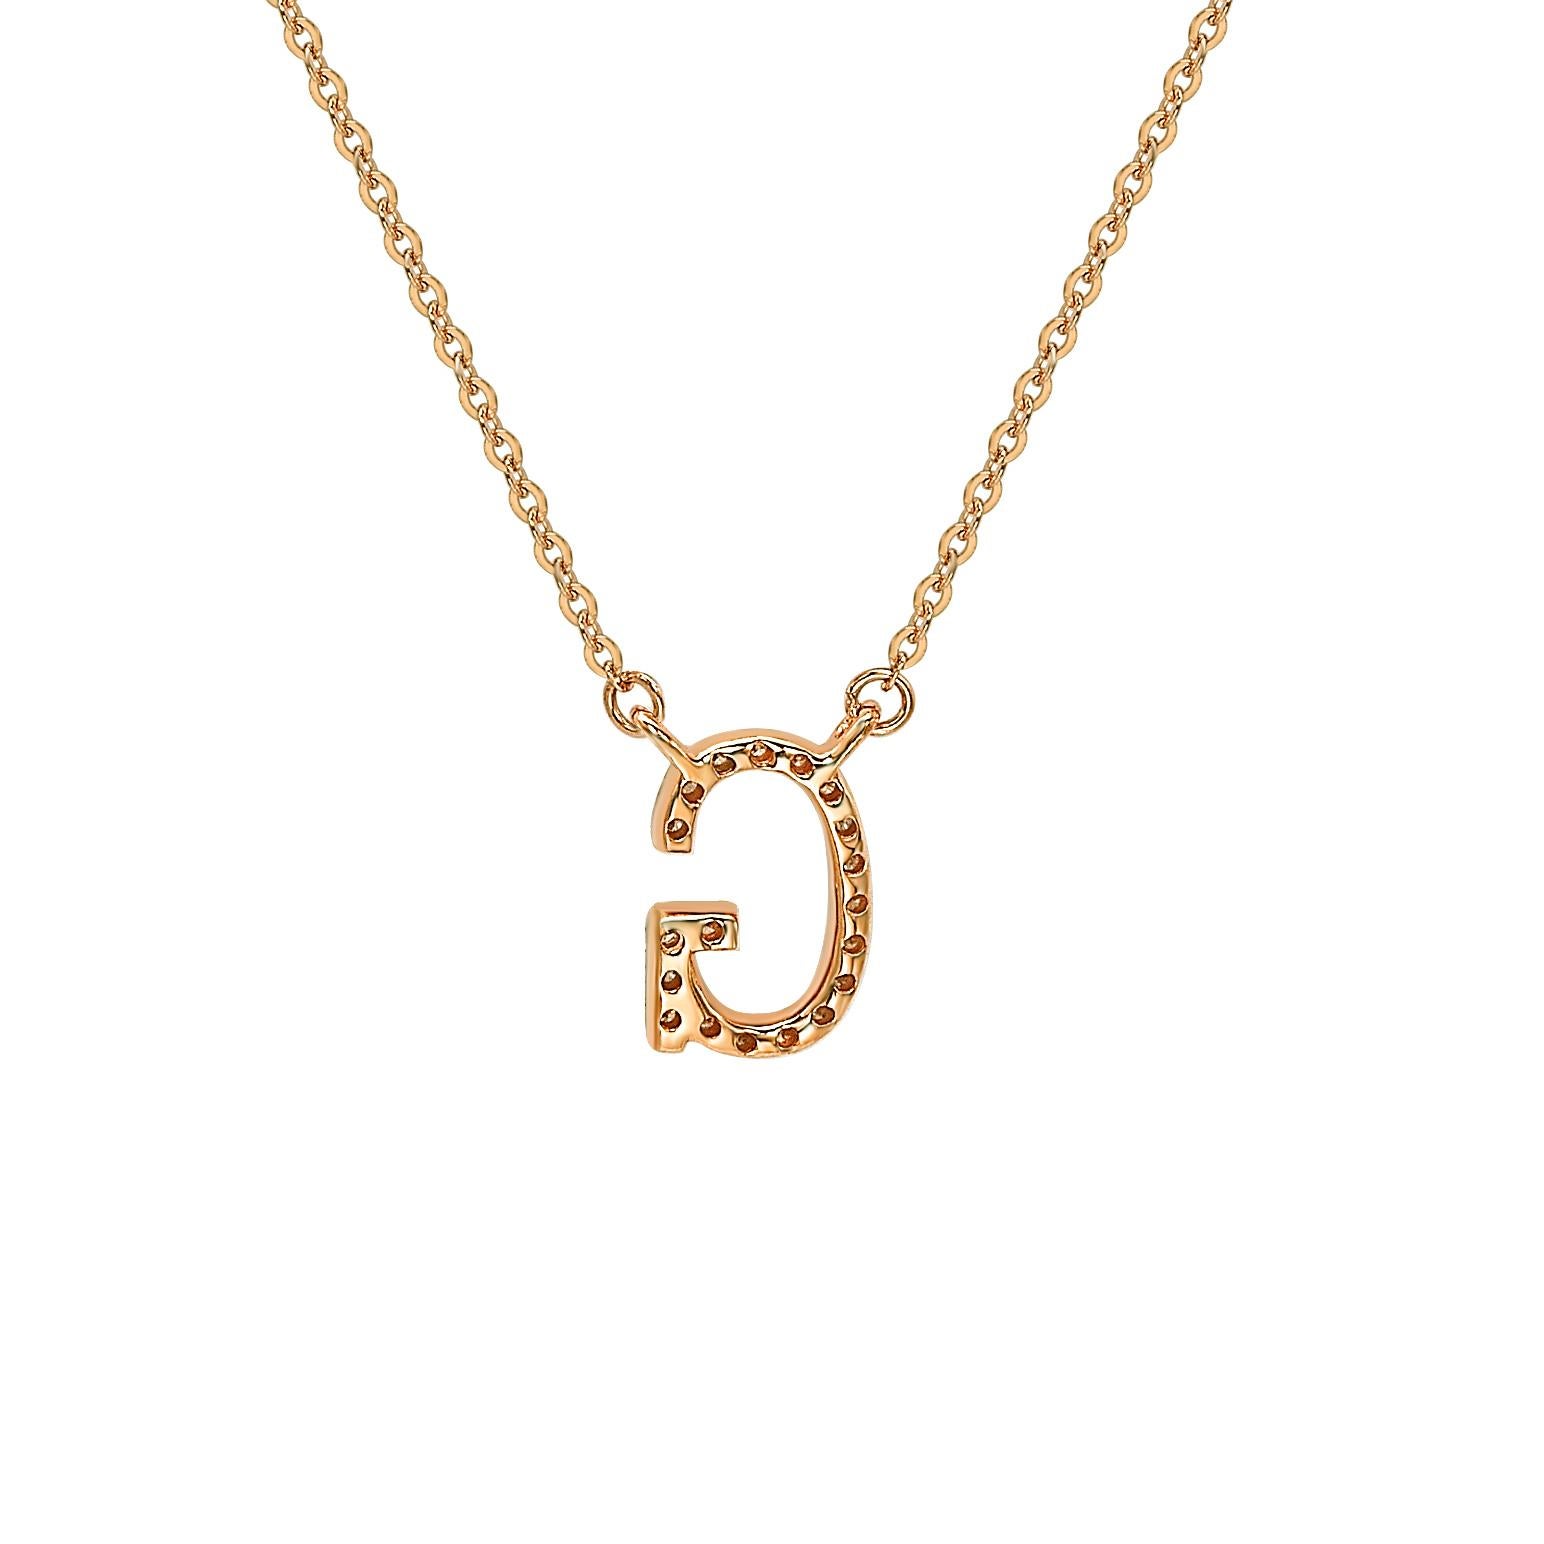 Diese atemberaubende, personalisierte Suzy Levian Brief-Halskette besteht aus natürlichen Diamanten, die von Hand in 14-karätiges Roségold gefasst wurden. Es ist das perfekte individuelle Geschenk, um jemandem mitzuteilen, dass man an ihn oder sie